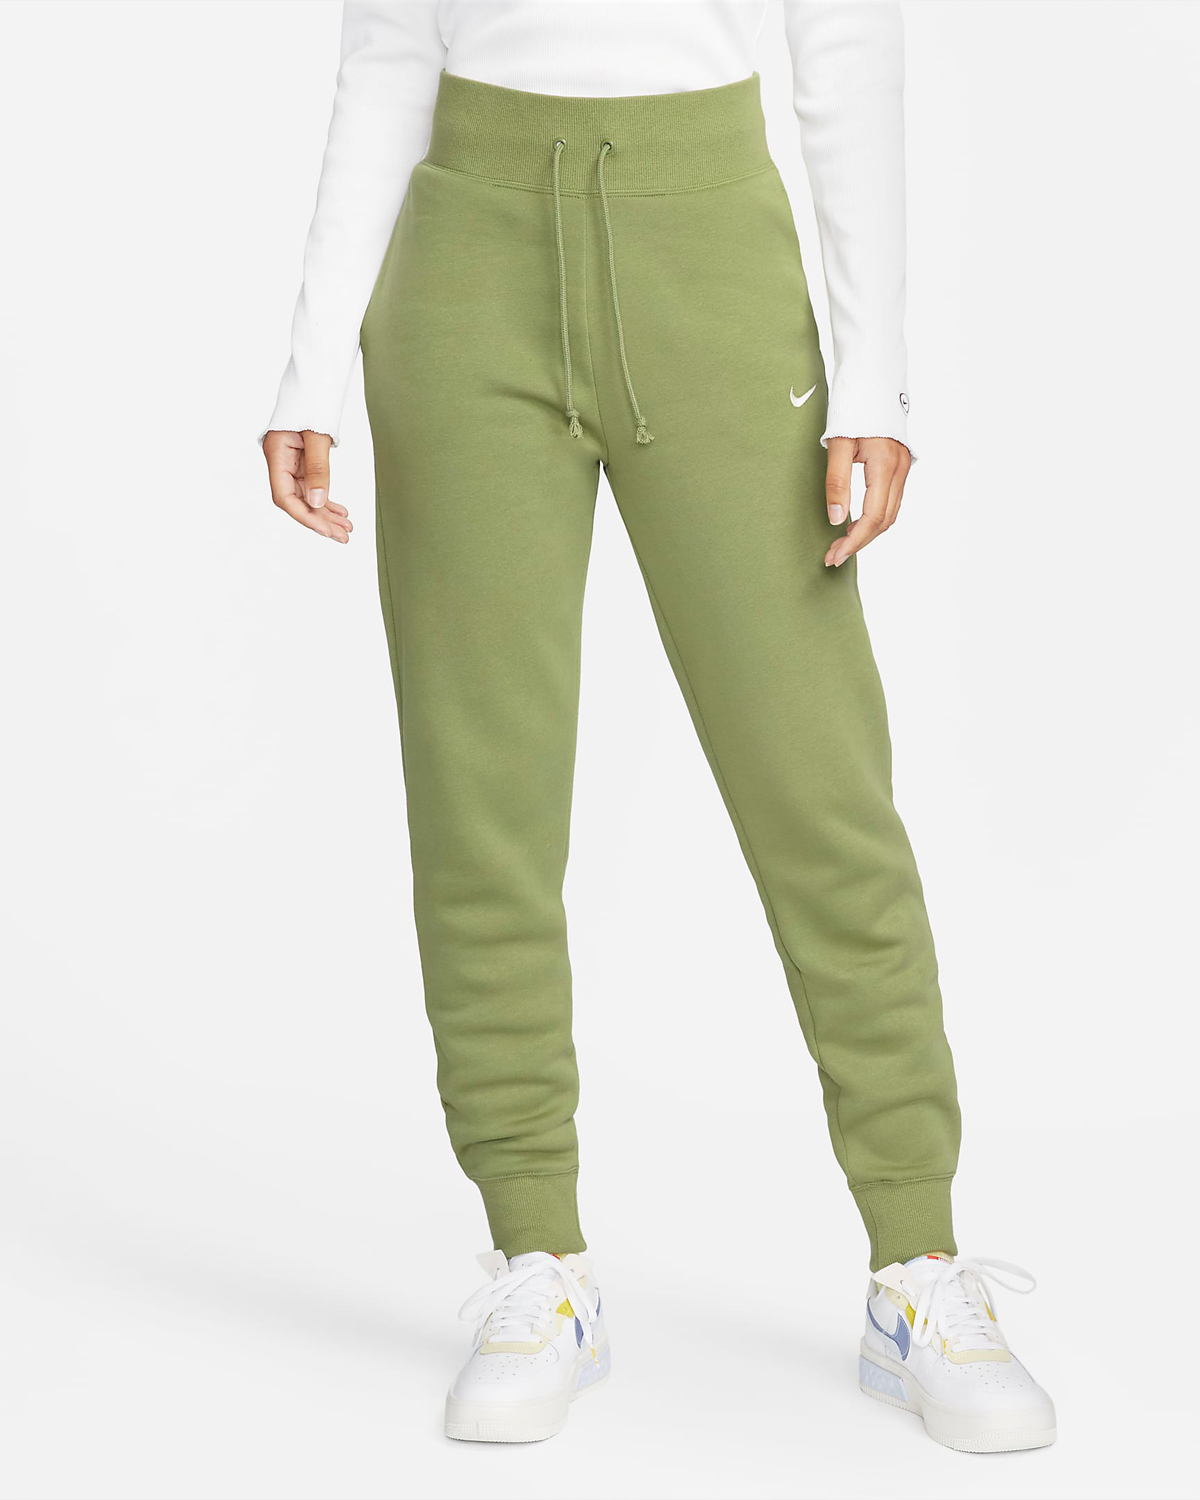 Nike-Sportswear-Phoenix-Womens-Joggers-Alligator-Green